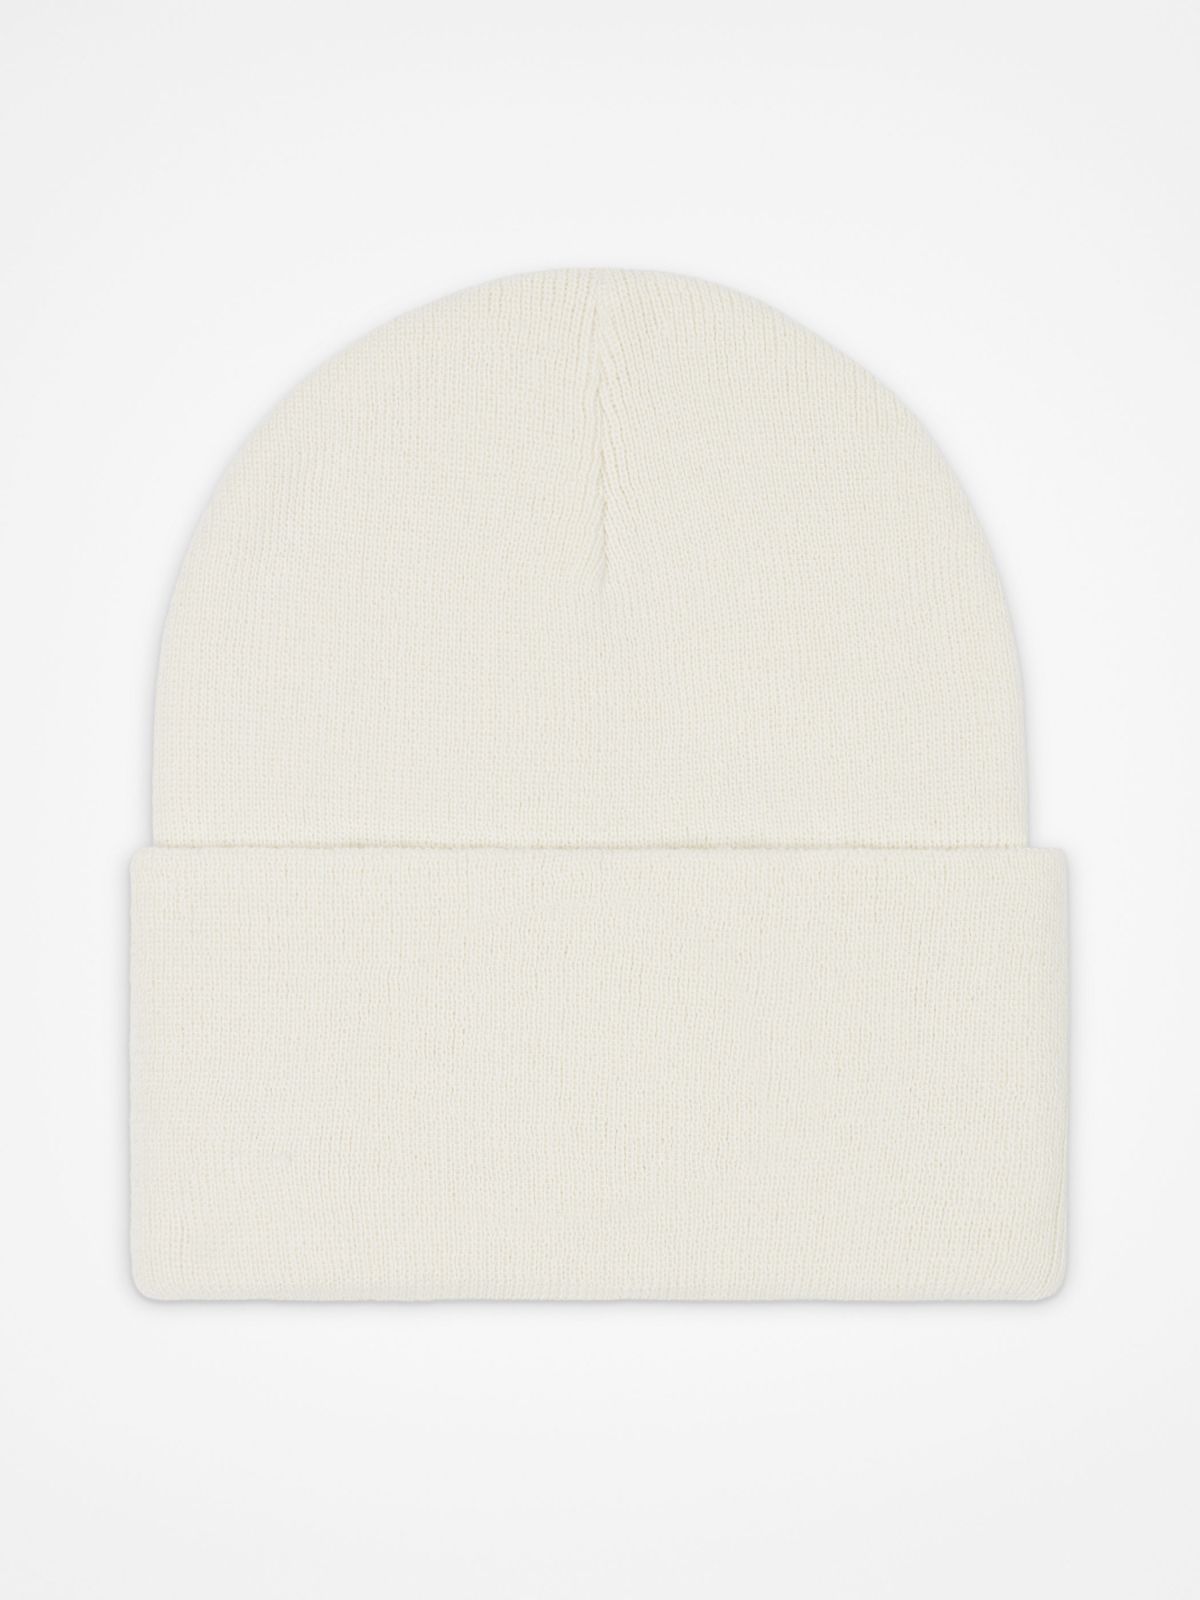  כובע גרב לוגו / נשים של CONVERSE